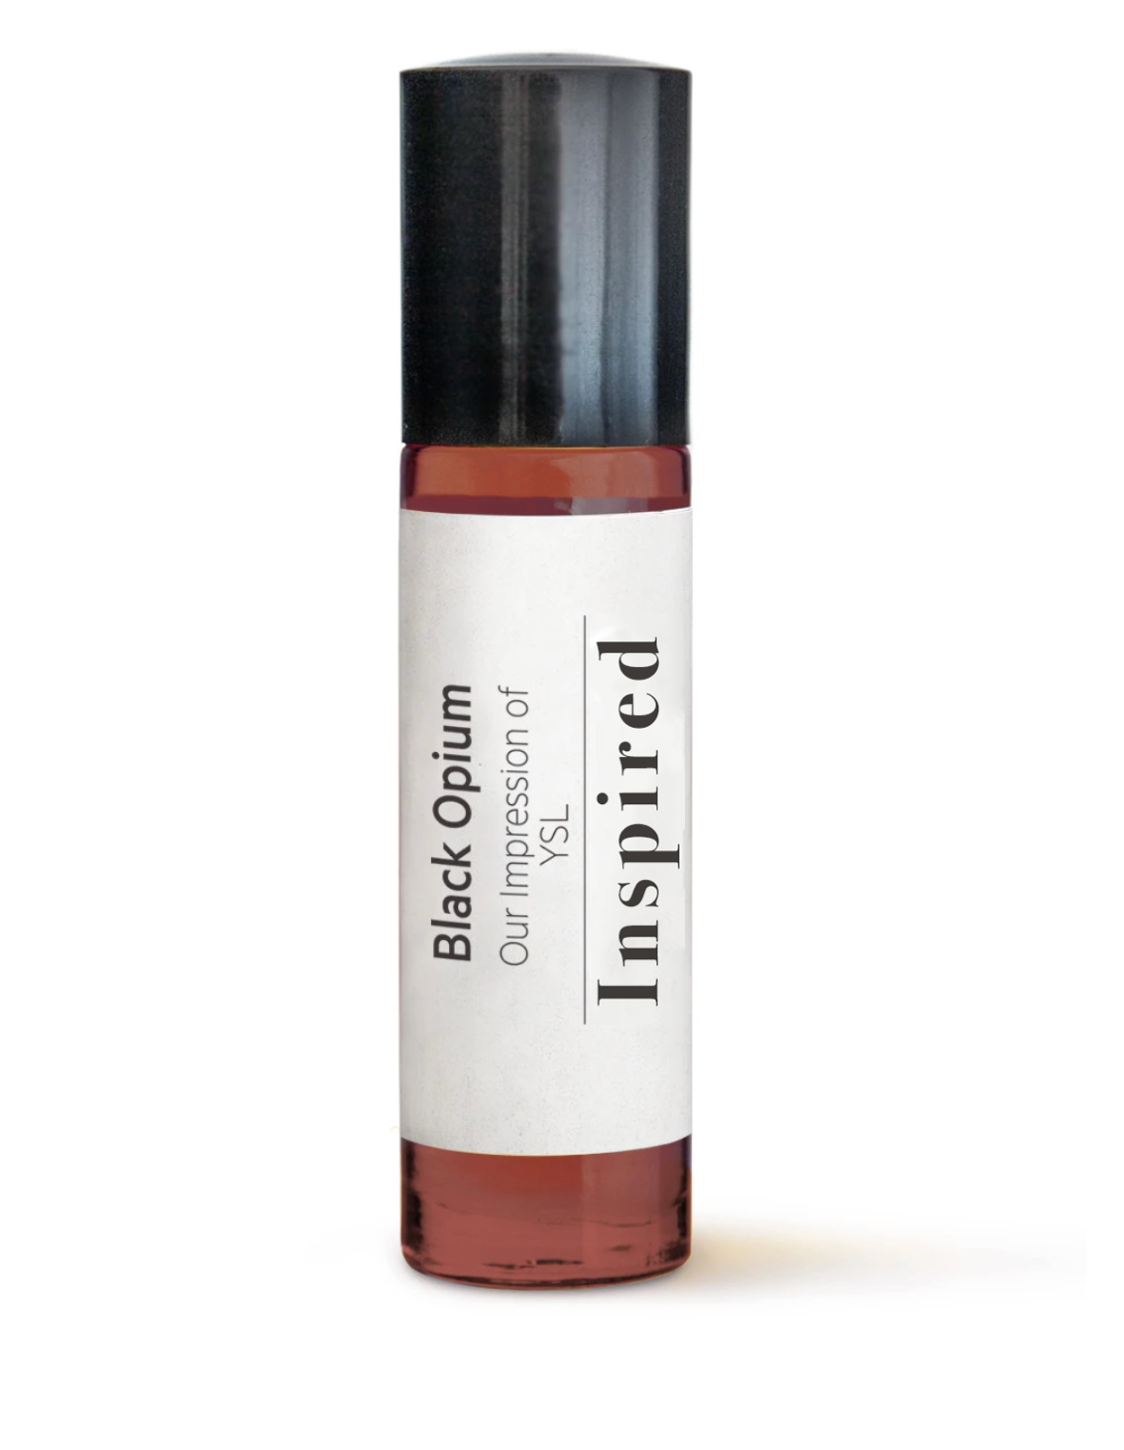 Long Lasting Luxury Perfume Oil Inspired By YSL, Black Opium